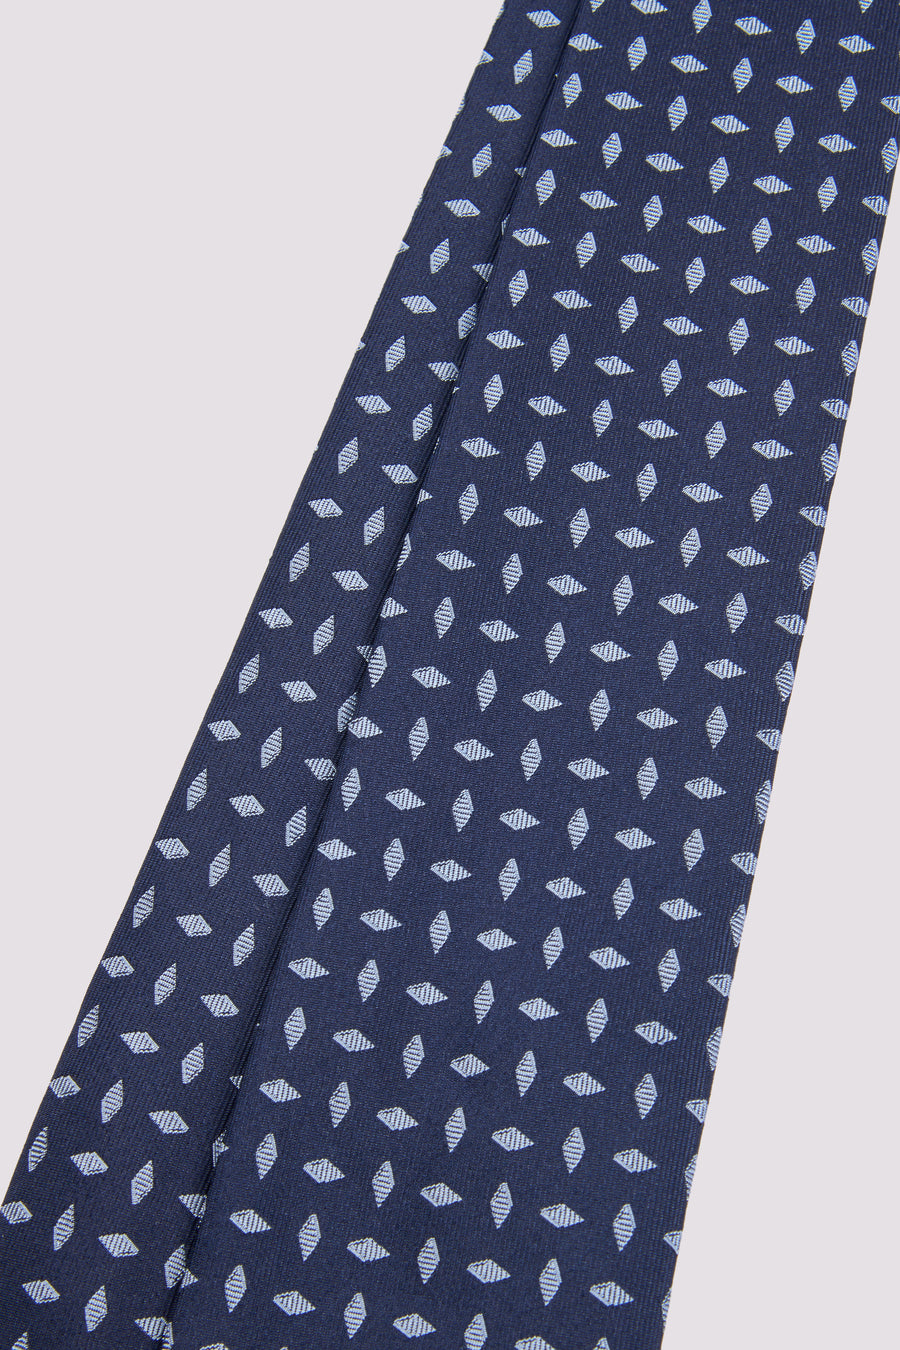 100% Silk Diamond Pattern Tie in Azure Blue